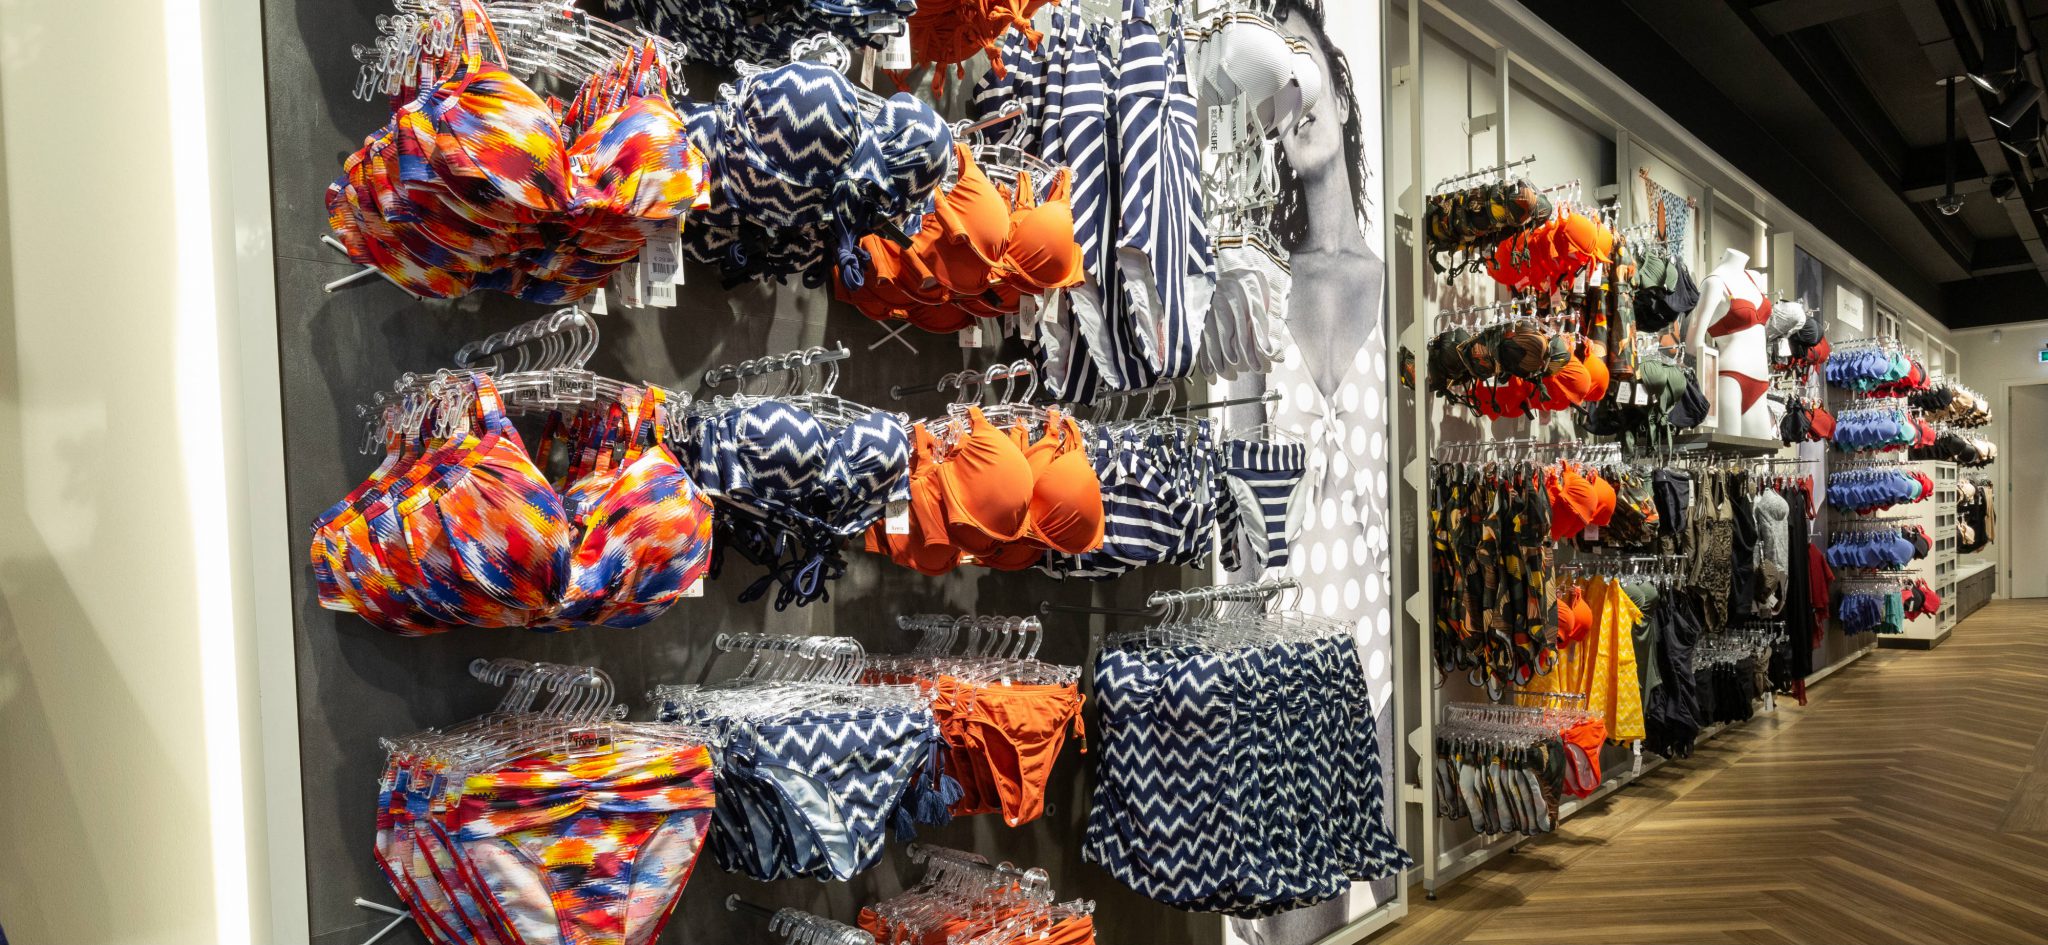 Livera NL | Utrecht: Magasin de lingerie - Boutique de lingerie